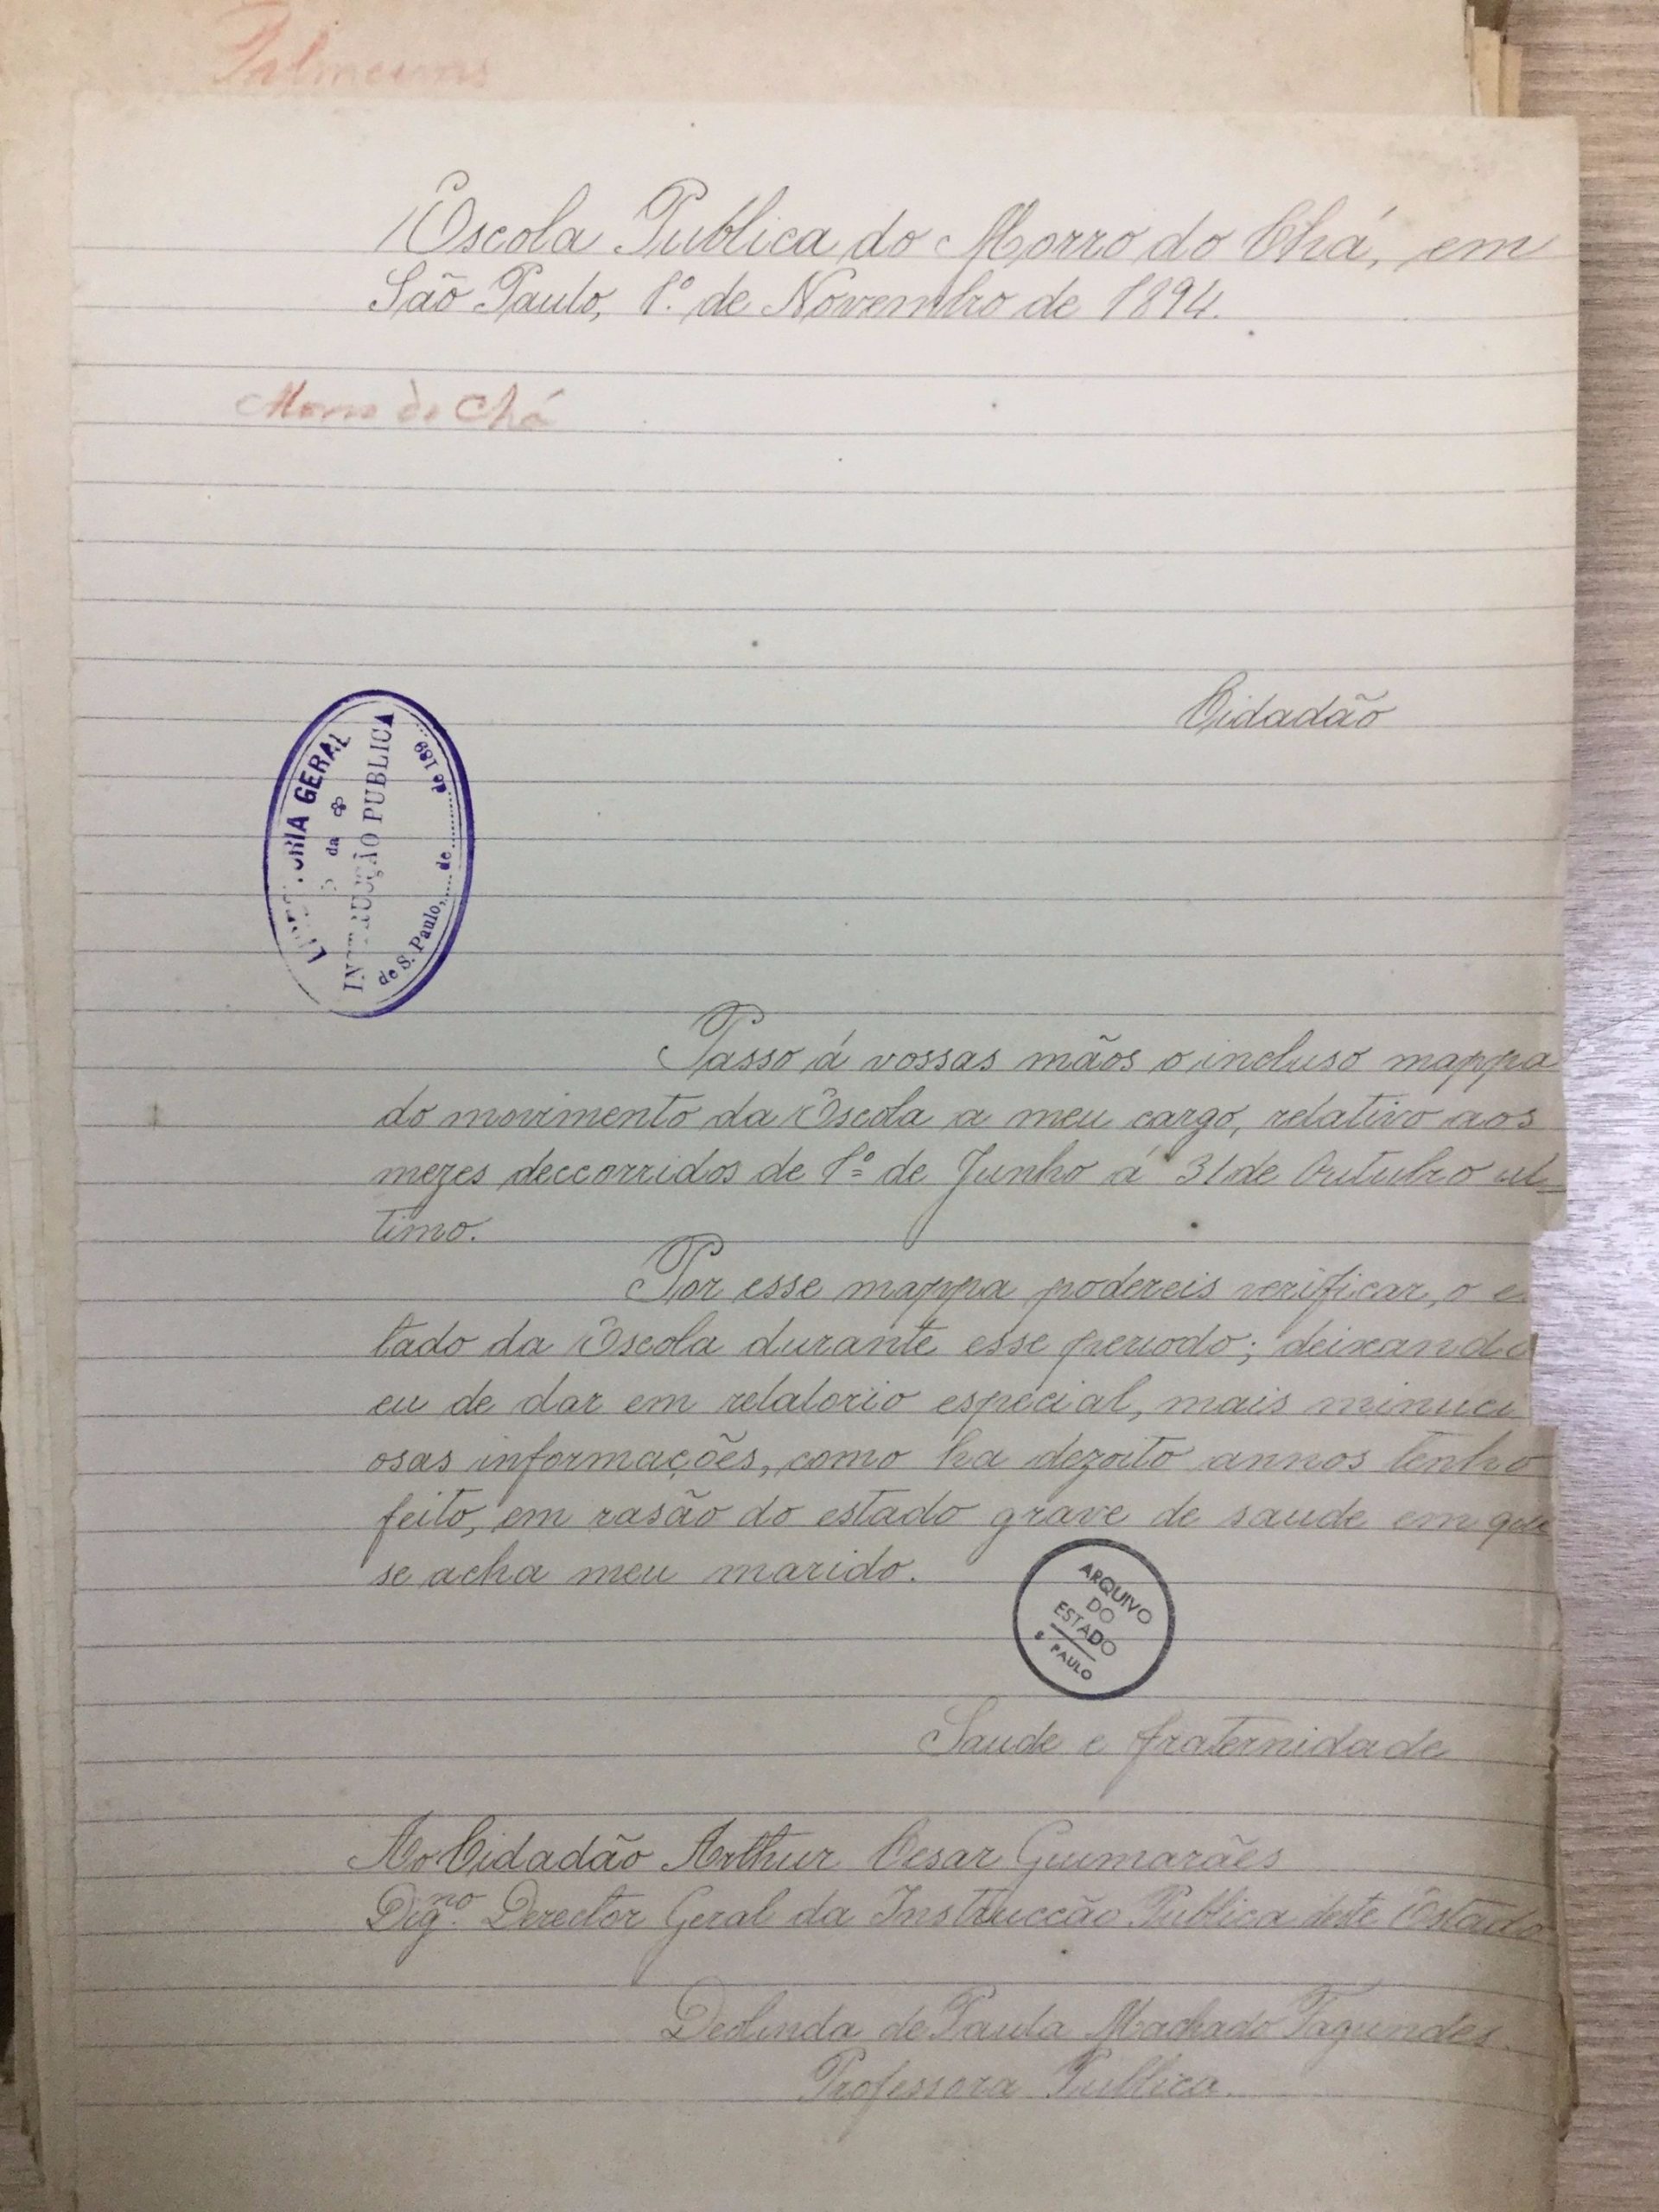 Relatório de Deolinda de Paula Machado Fagundes - Novembro/ 1894. APESP, Império, Série Instrução Pública, Ordem 5041.